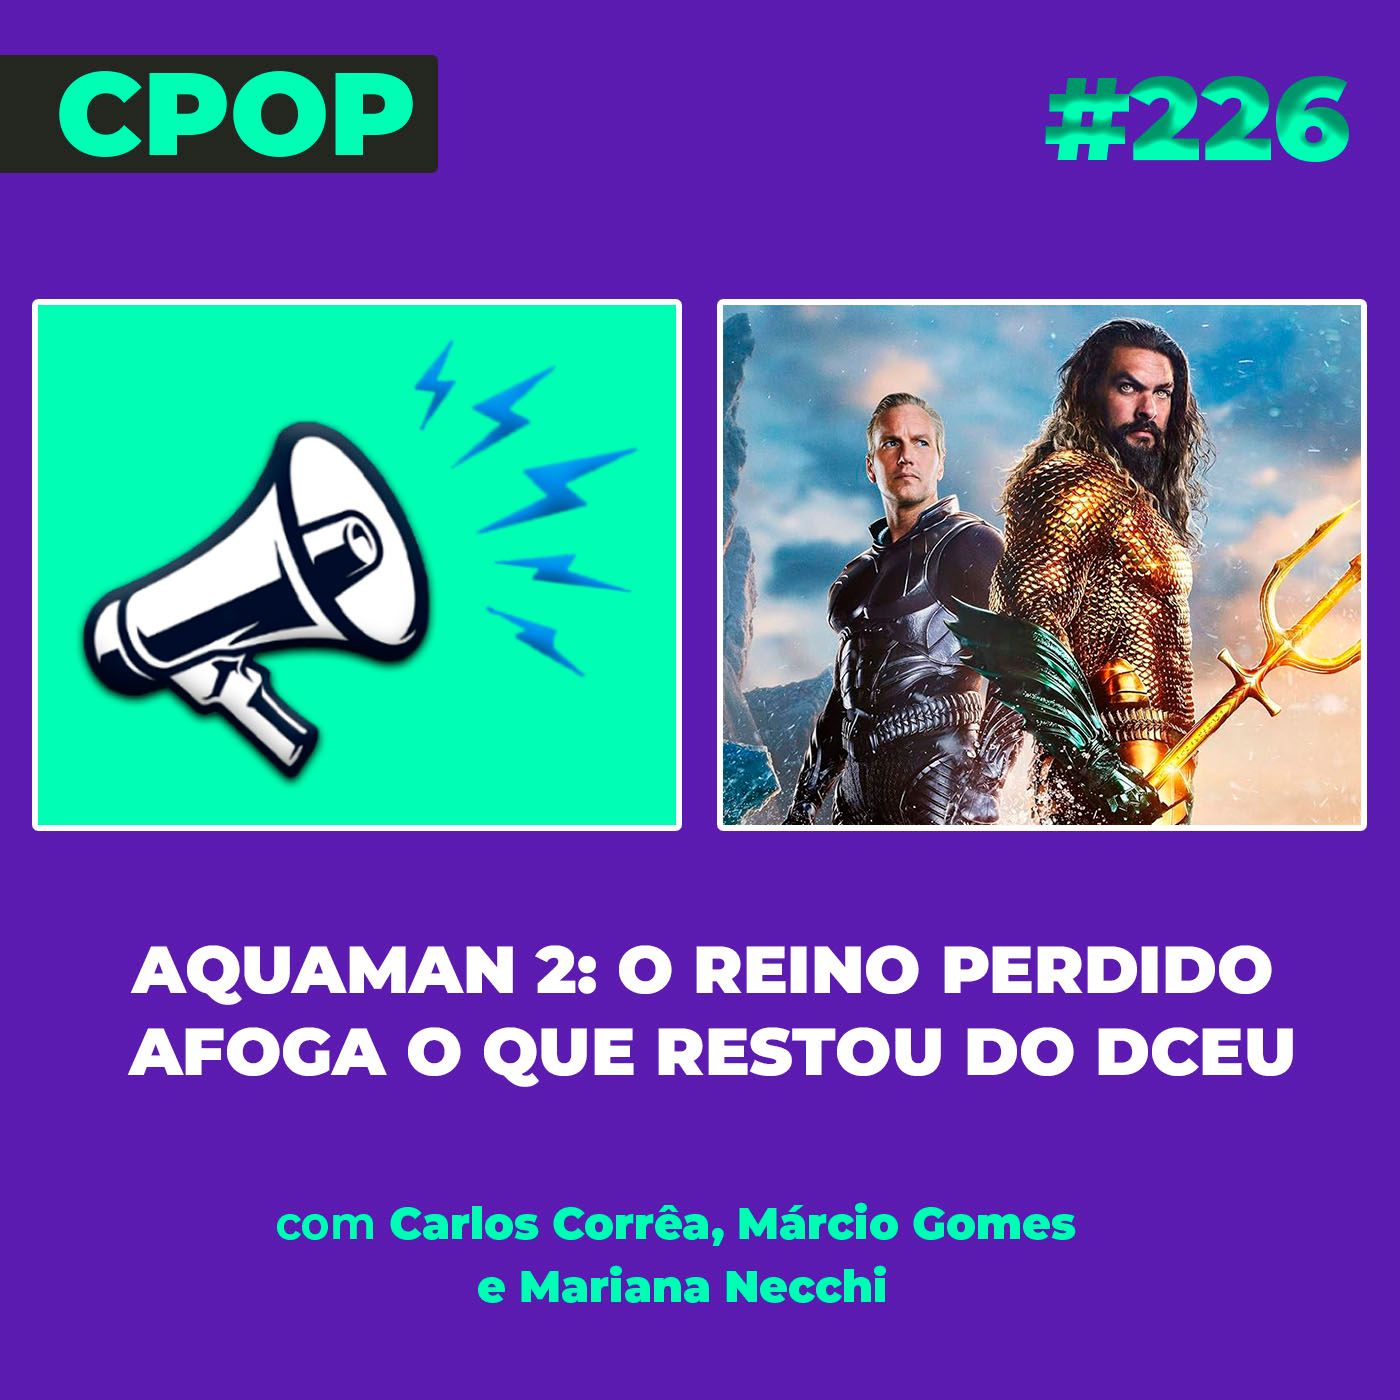 #226 Aquaman 2: O Reino Perdido afoga o que restou do DCEU